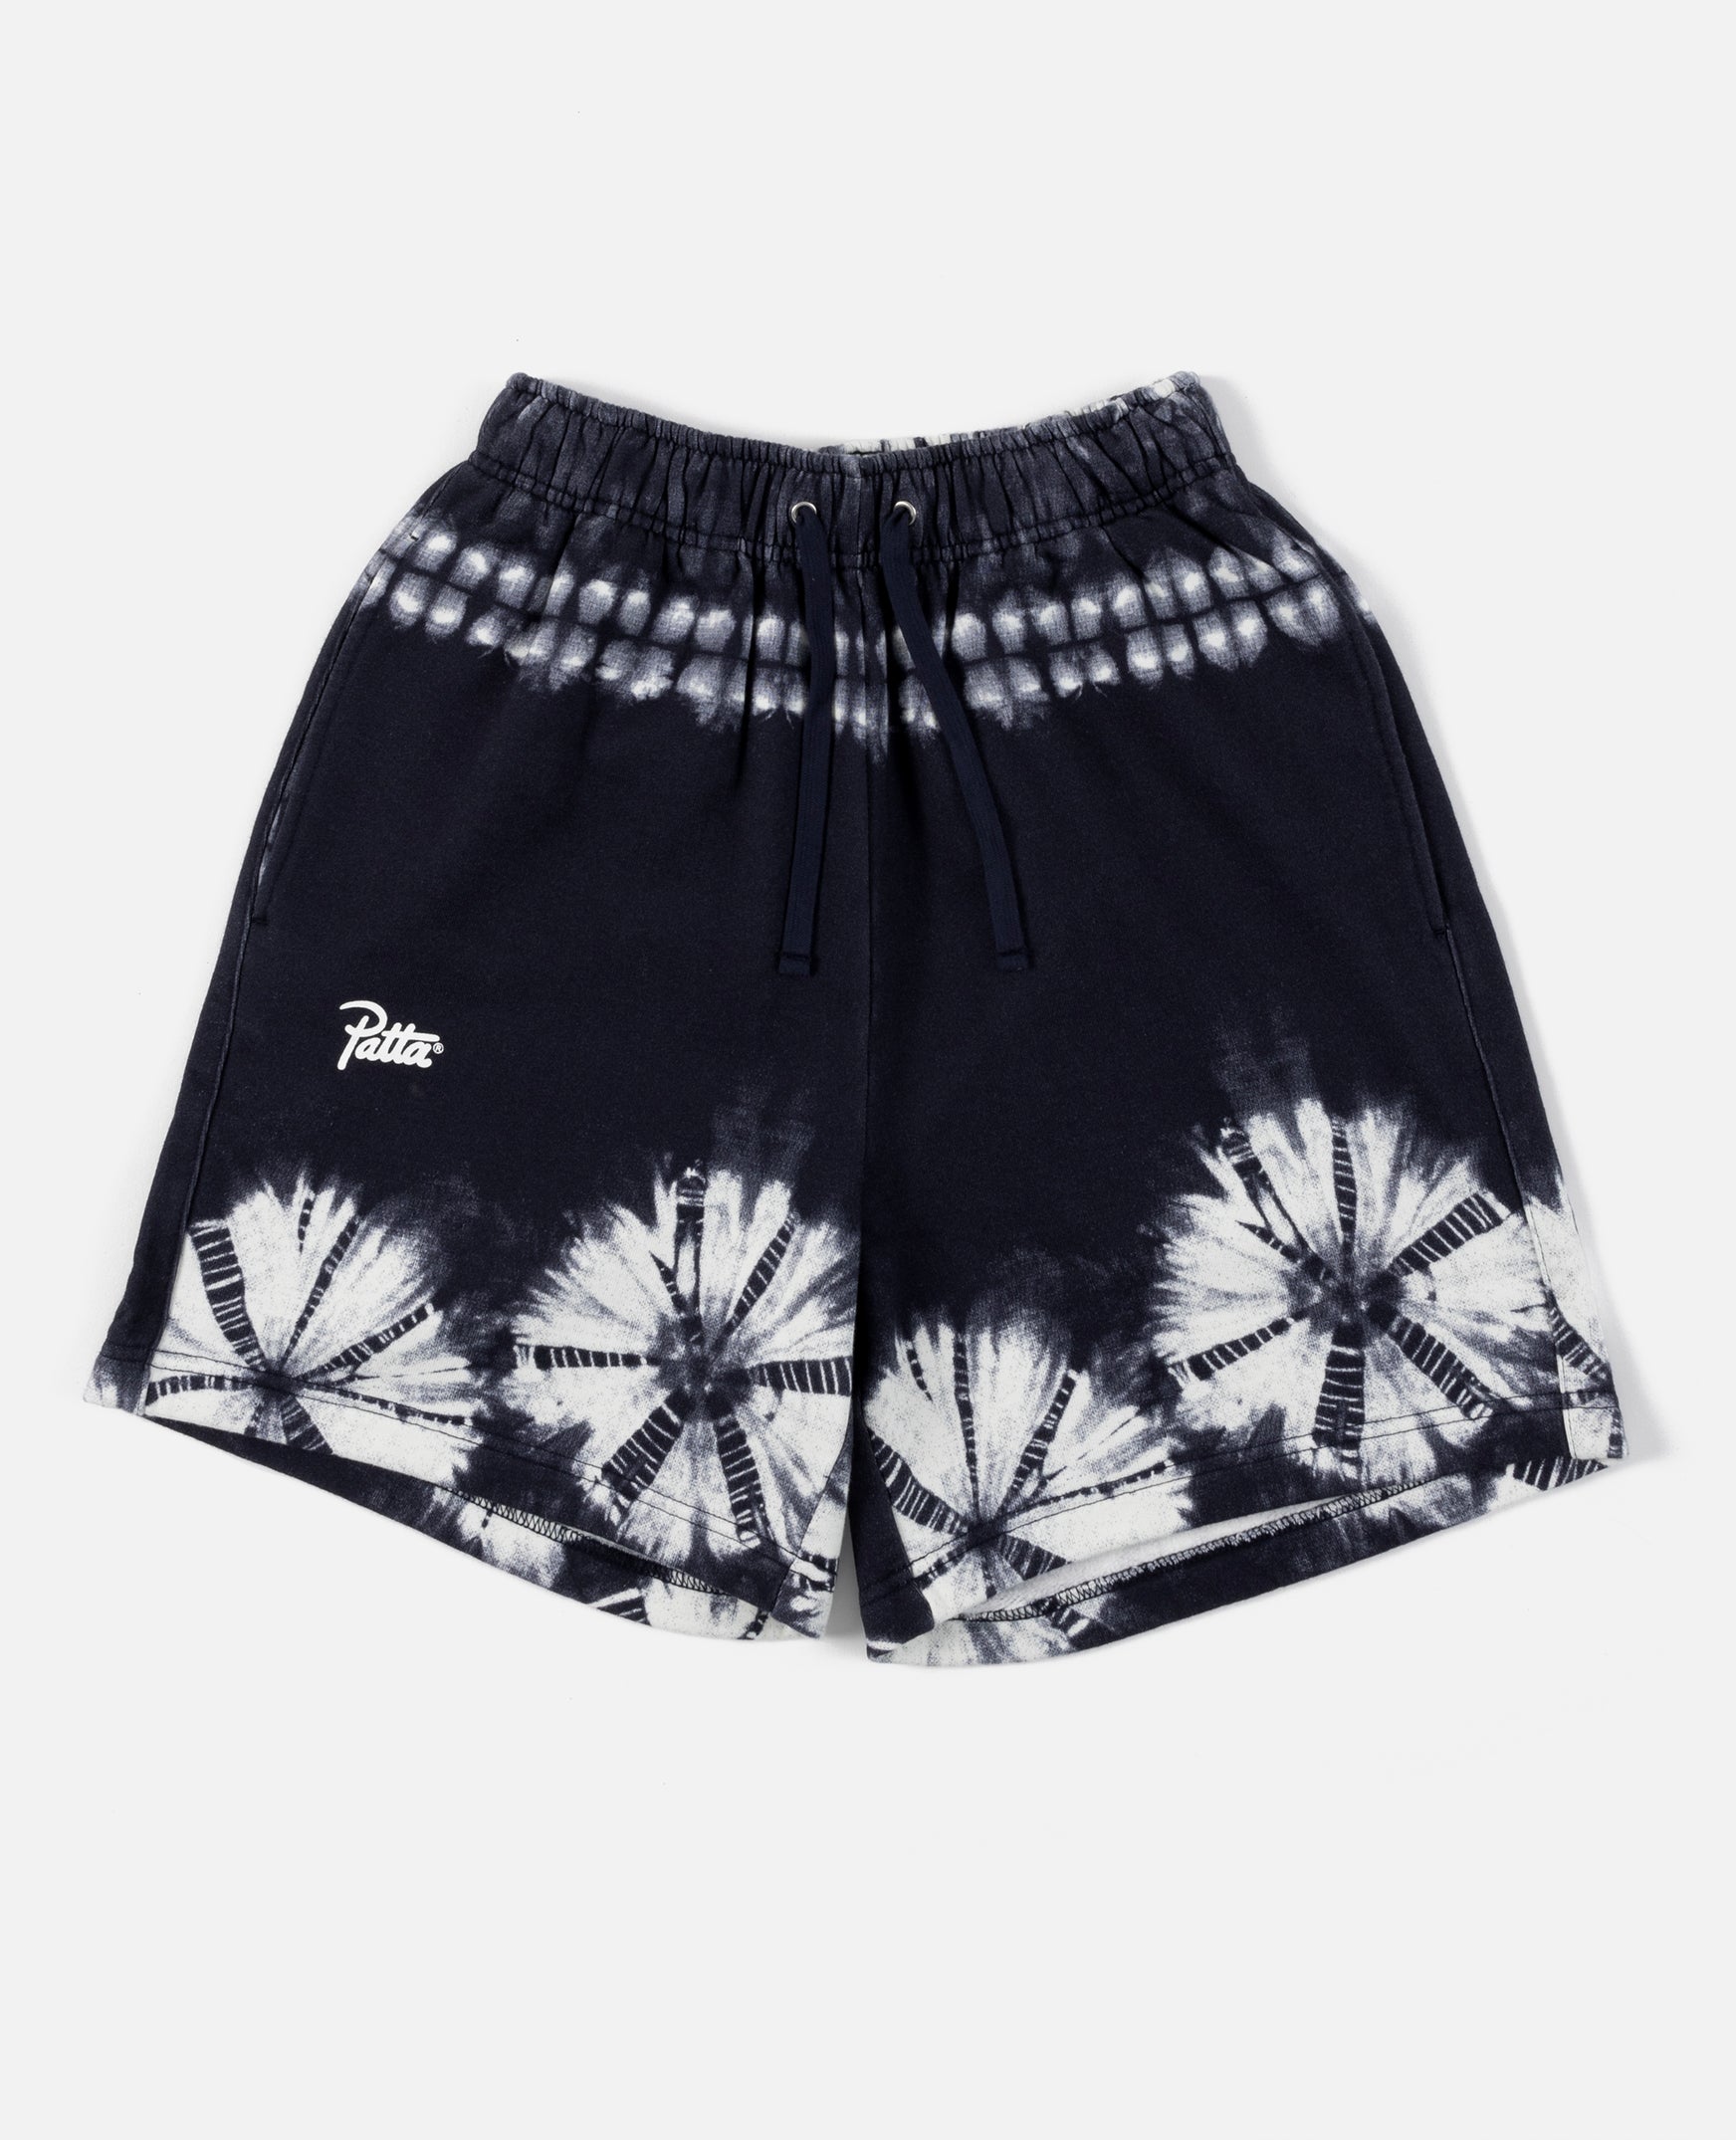 Patta Basic Shibori Jogging Shorts (Odyssey Gray)